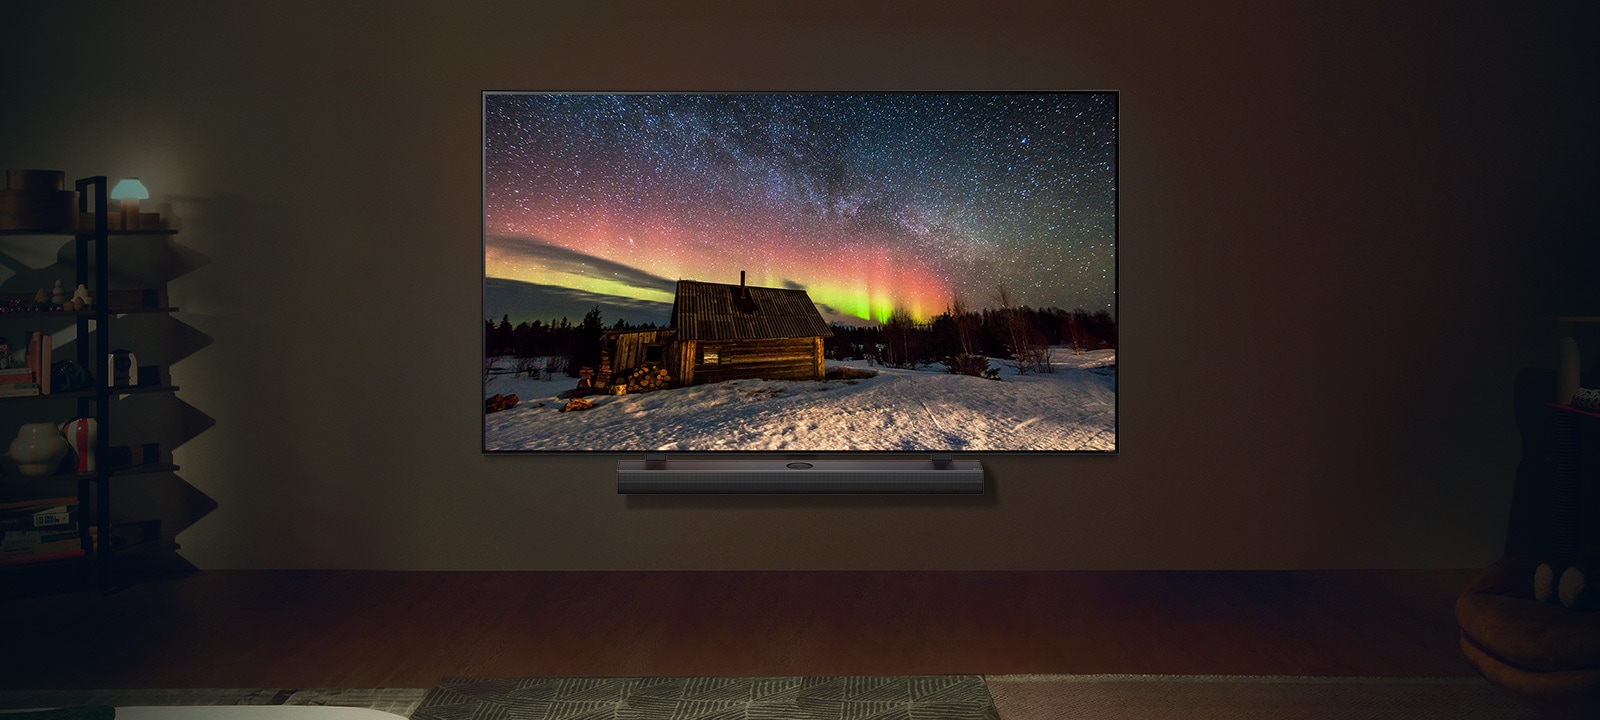 Телевизор LG и звуковая панель LG Soundbar в современном жилом пространстве в ночное время. Изображение северного сияния на экране отображается с идеальным уровнем яркости.